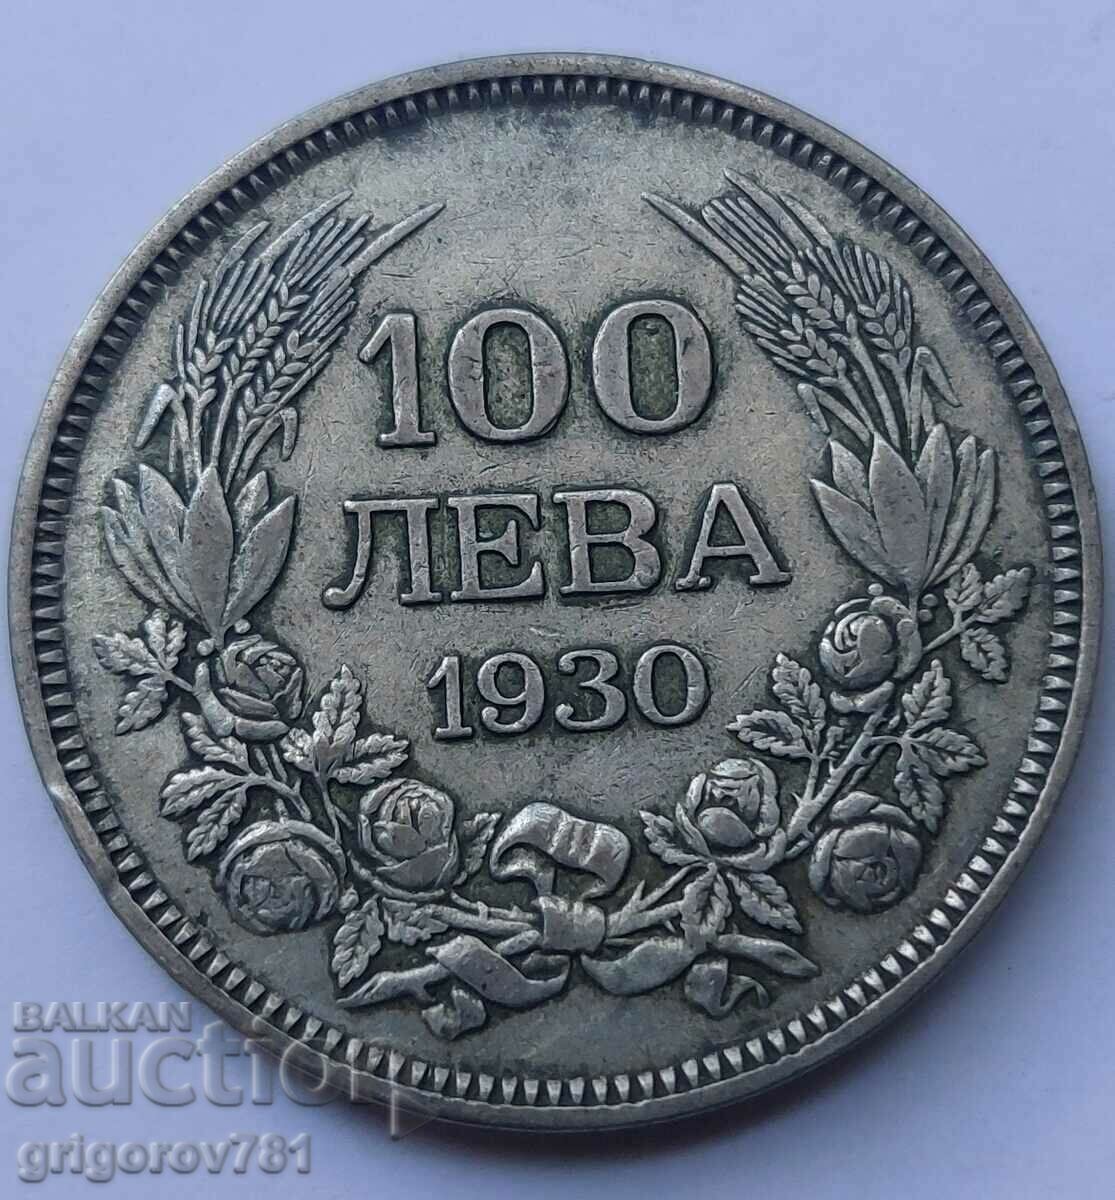 100 leva argint Bulgaria 1930 - monedă de argint #33